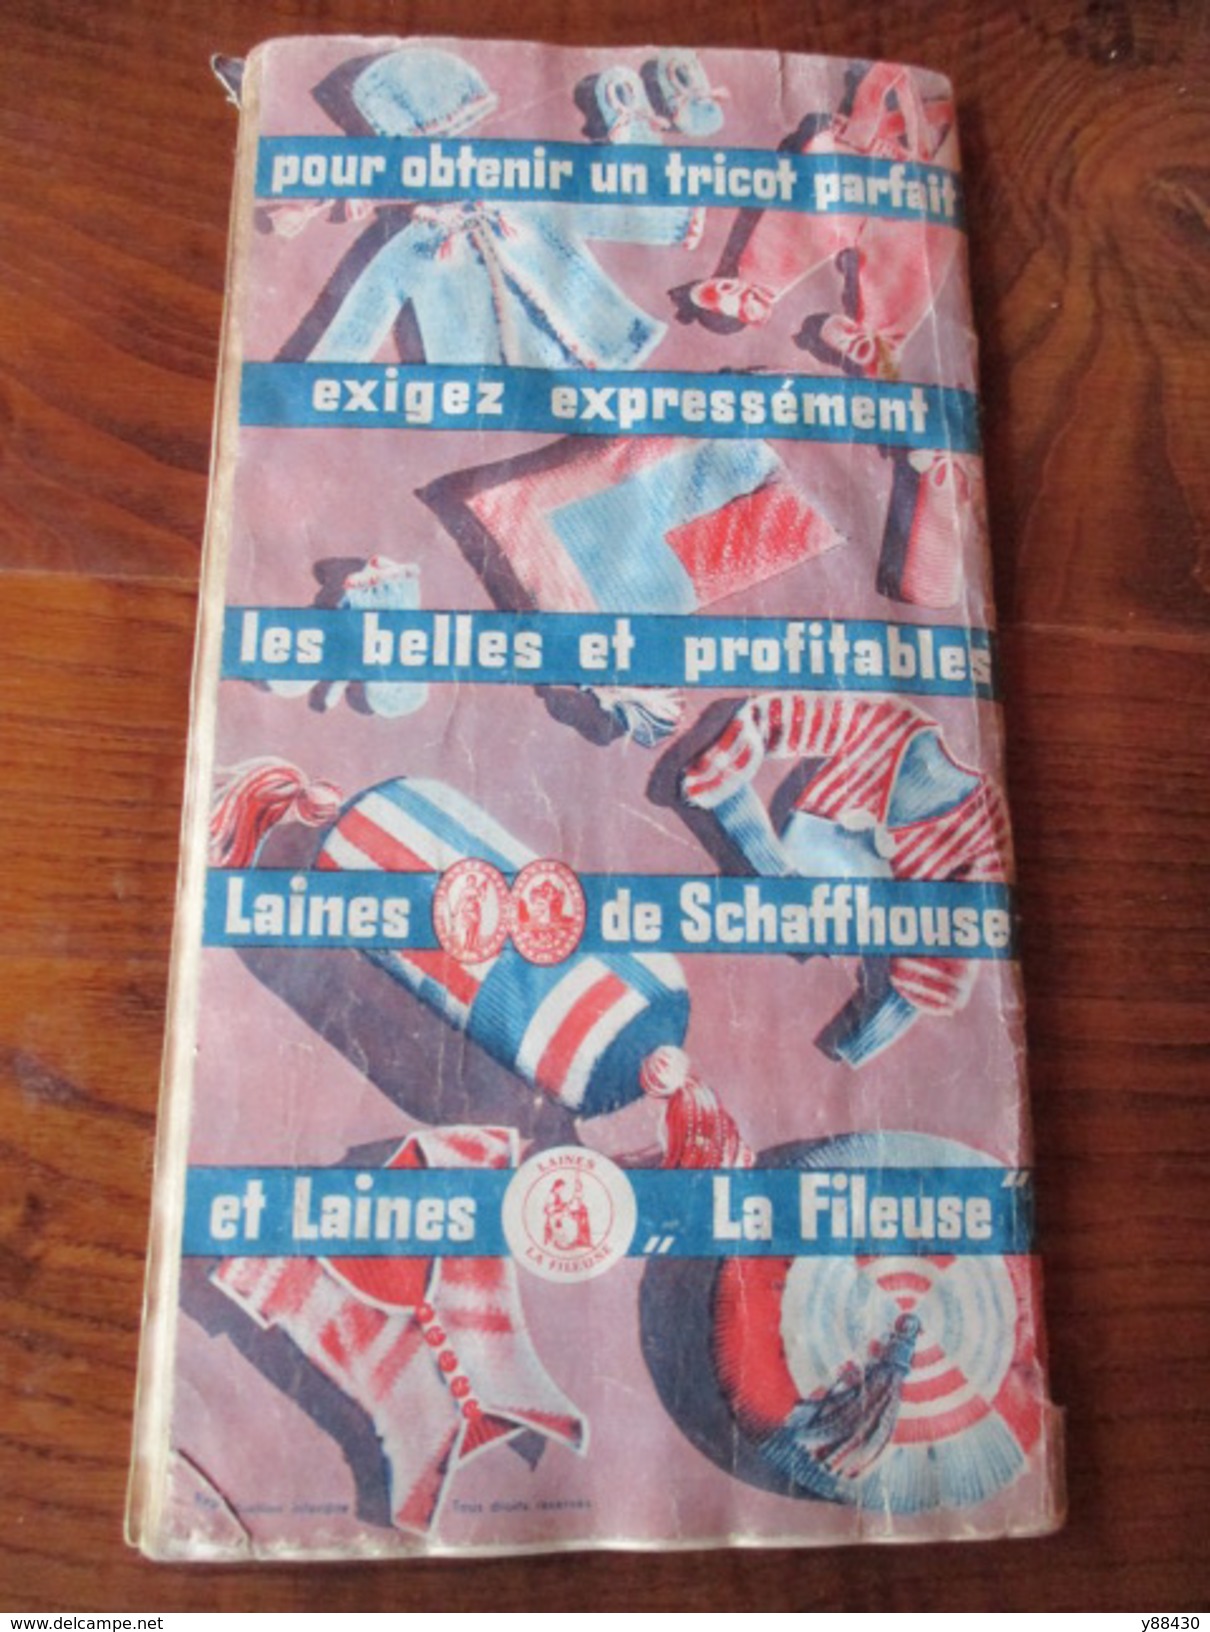 Album de TRICOTS - Laines de SCHAFFHOUSE & Laines LA FILEUSE - Livret de 128 pages - voir les 10 photos